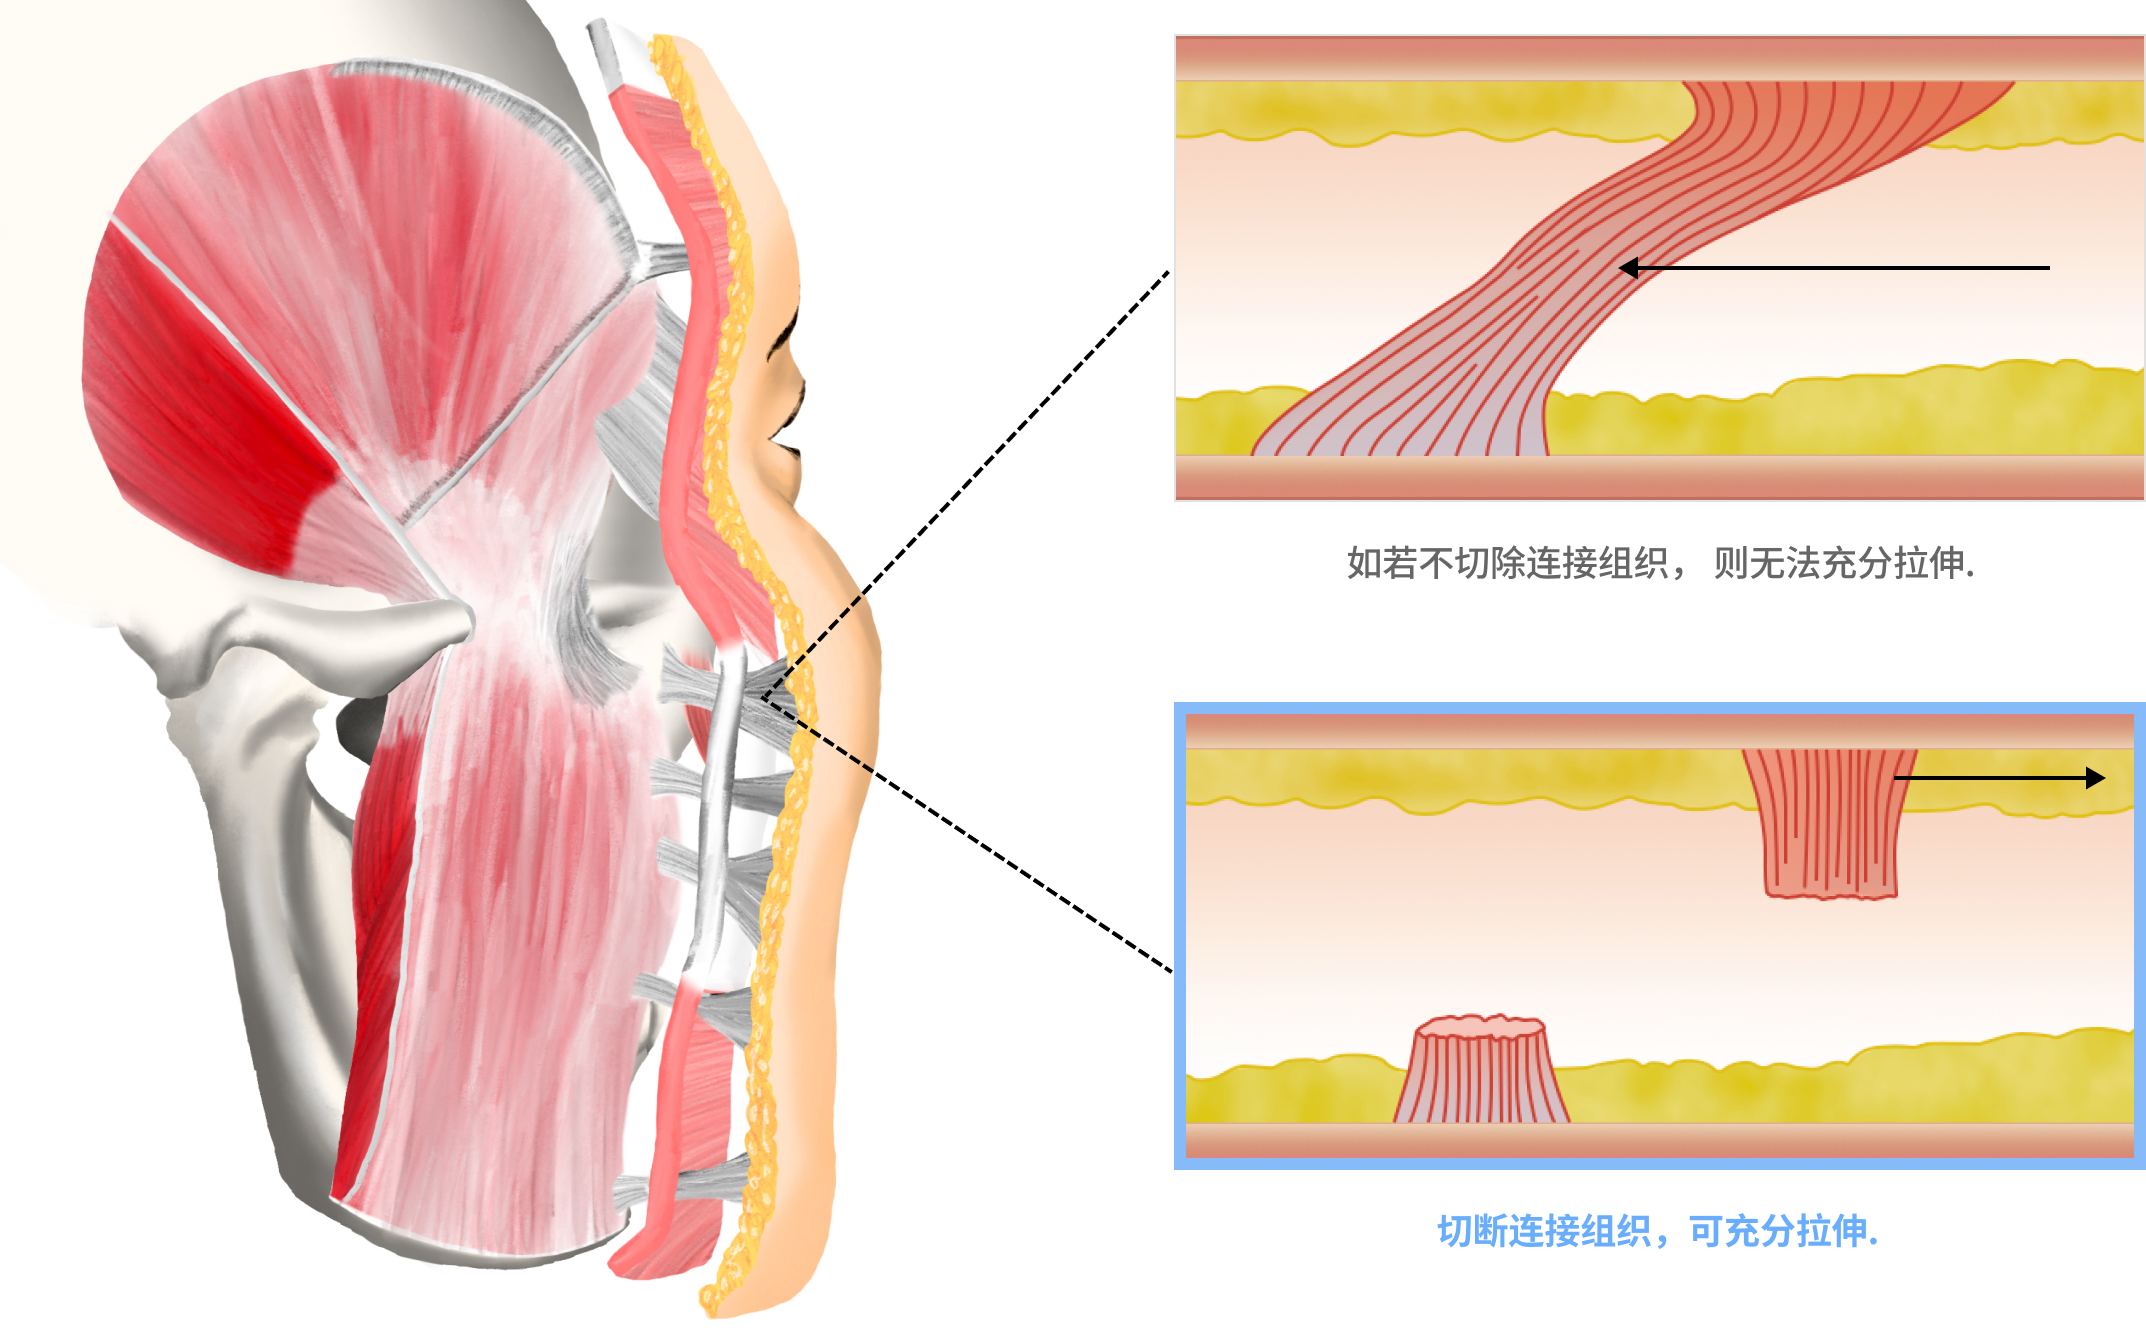 面部颈部拉皮 面部颈部拉皮,面部拉皮,颈部拉皮,面部拉皮后记,面部拉皮副作用